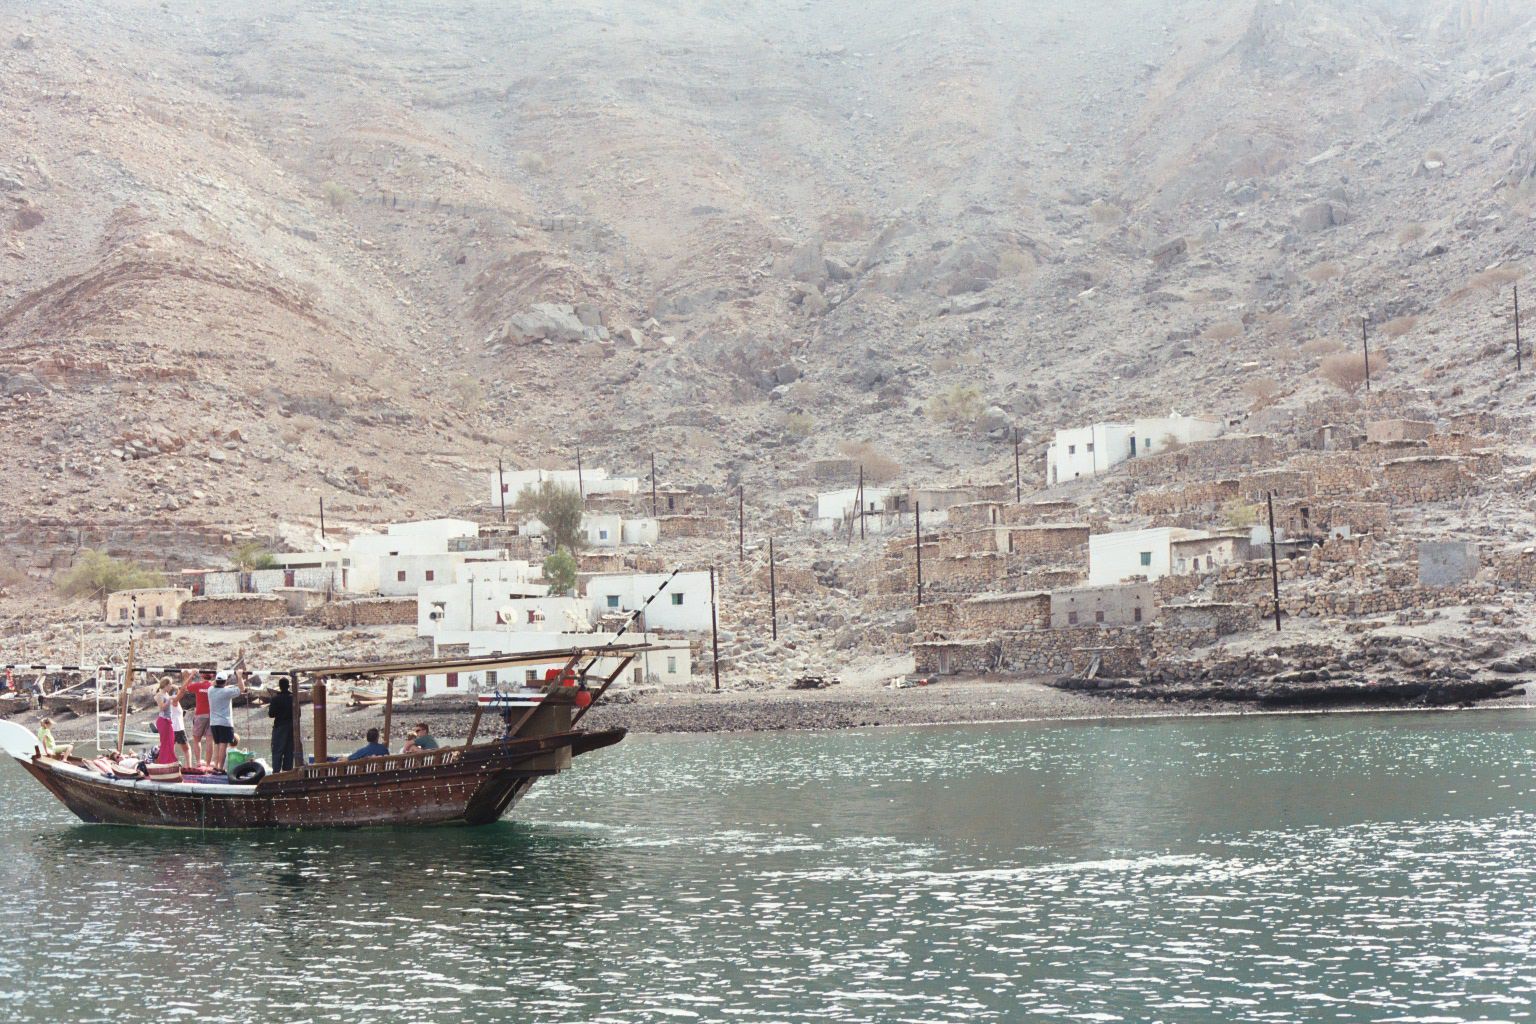  السياحة في مسندم بسلطنة عمان